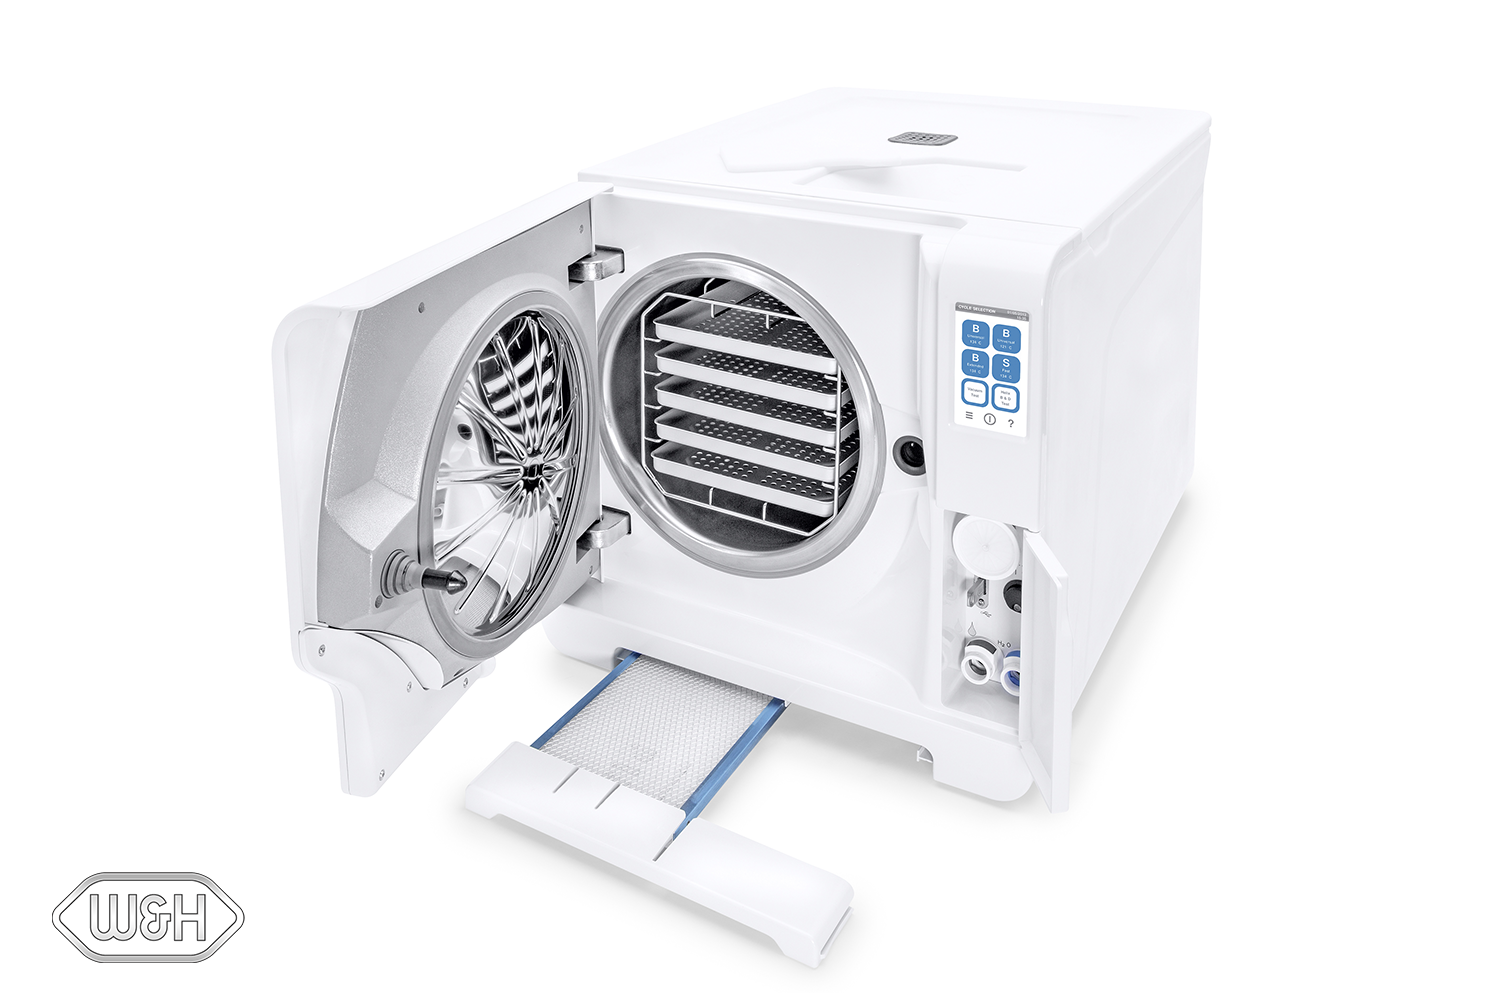 LISA Remote Plus Sterilisator mit geöffneter Klappe von W&H